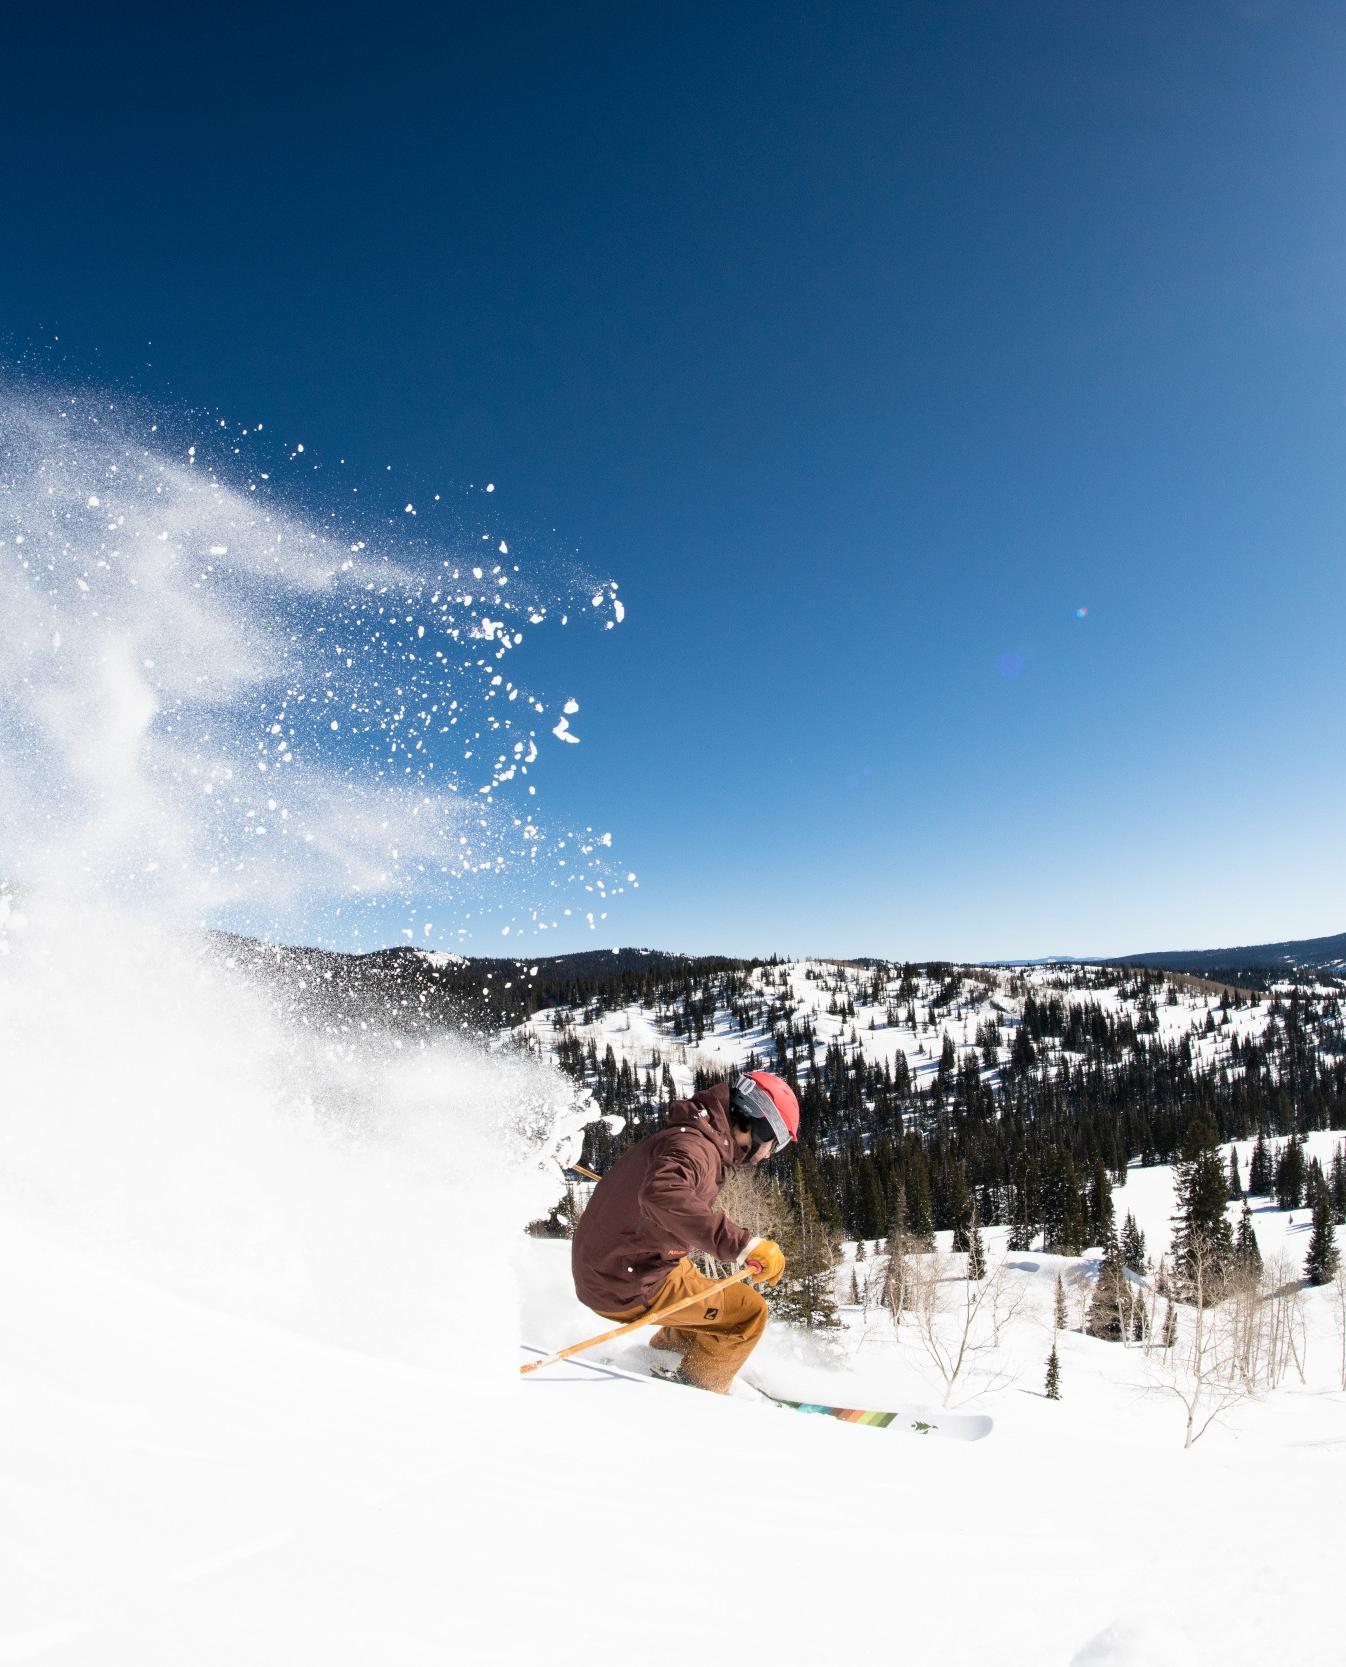 Skier shredding fresh powder on a sunny day